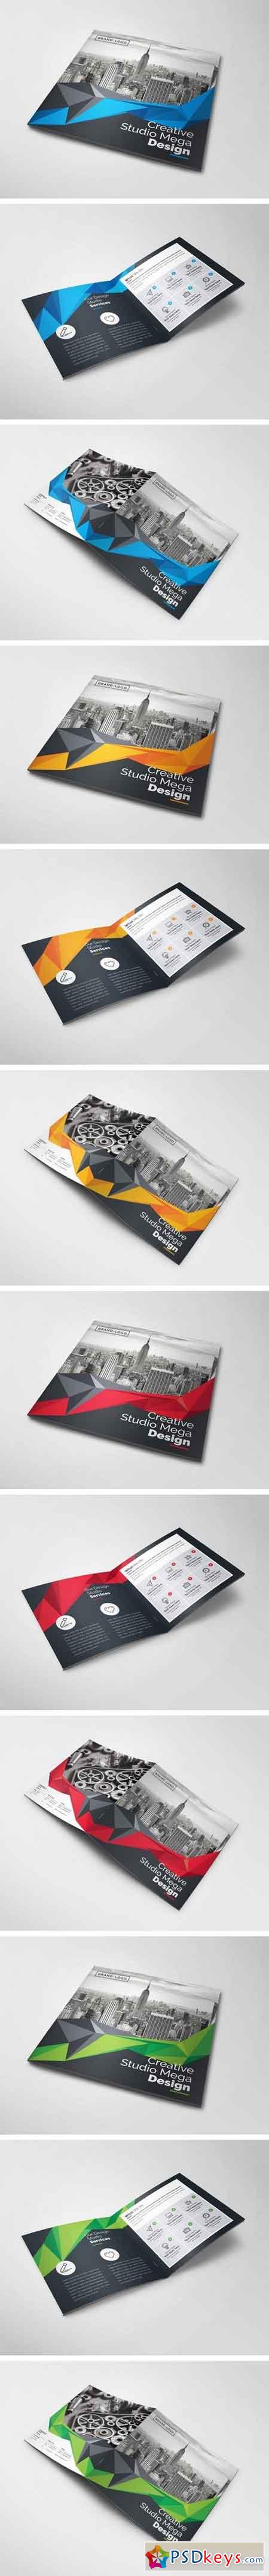 Creative Square Bi-Fold Brochure 2064331